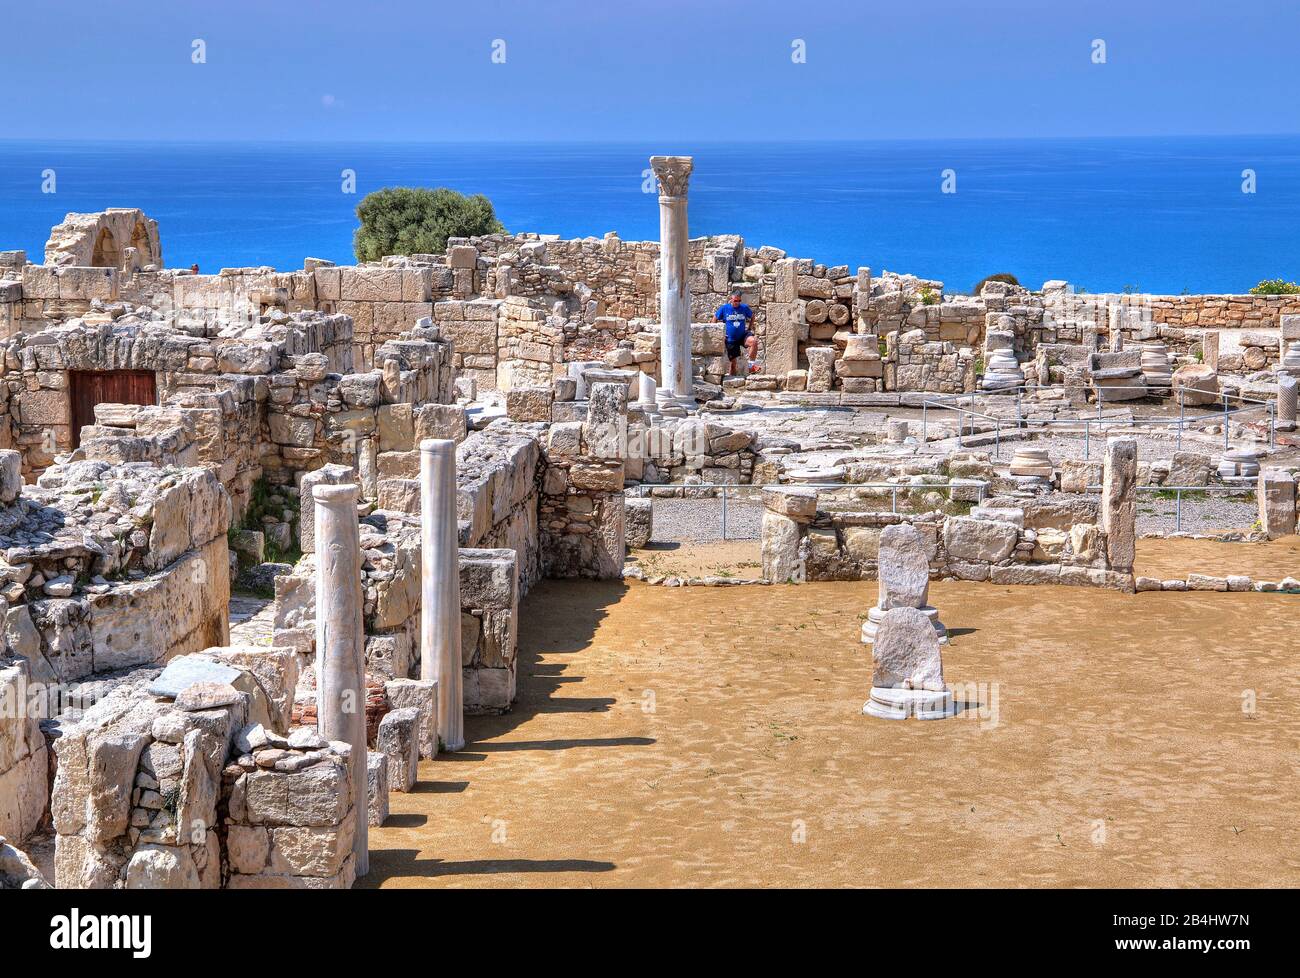 Agora sopra la scogliera nel sito archeologico antico Kourion vicino a Limassol, costa mediterranea, Cipro Foto Stock